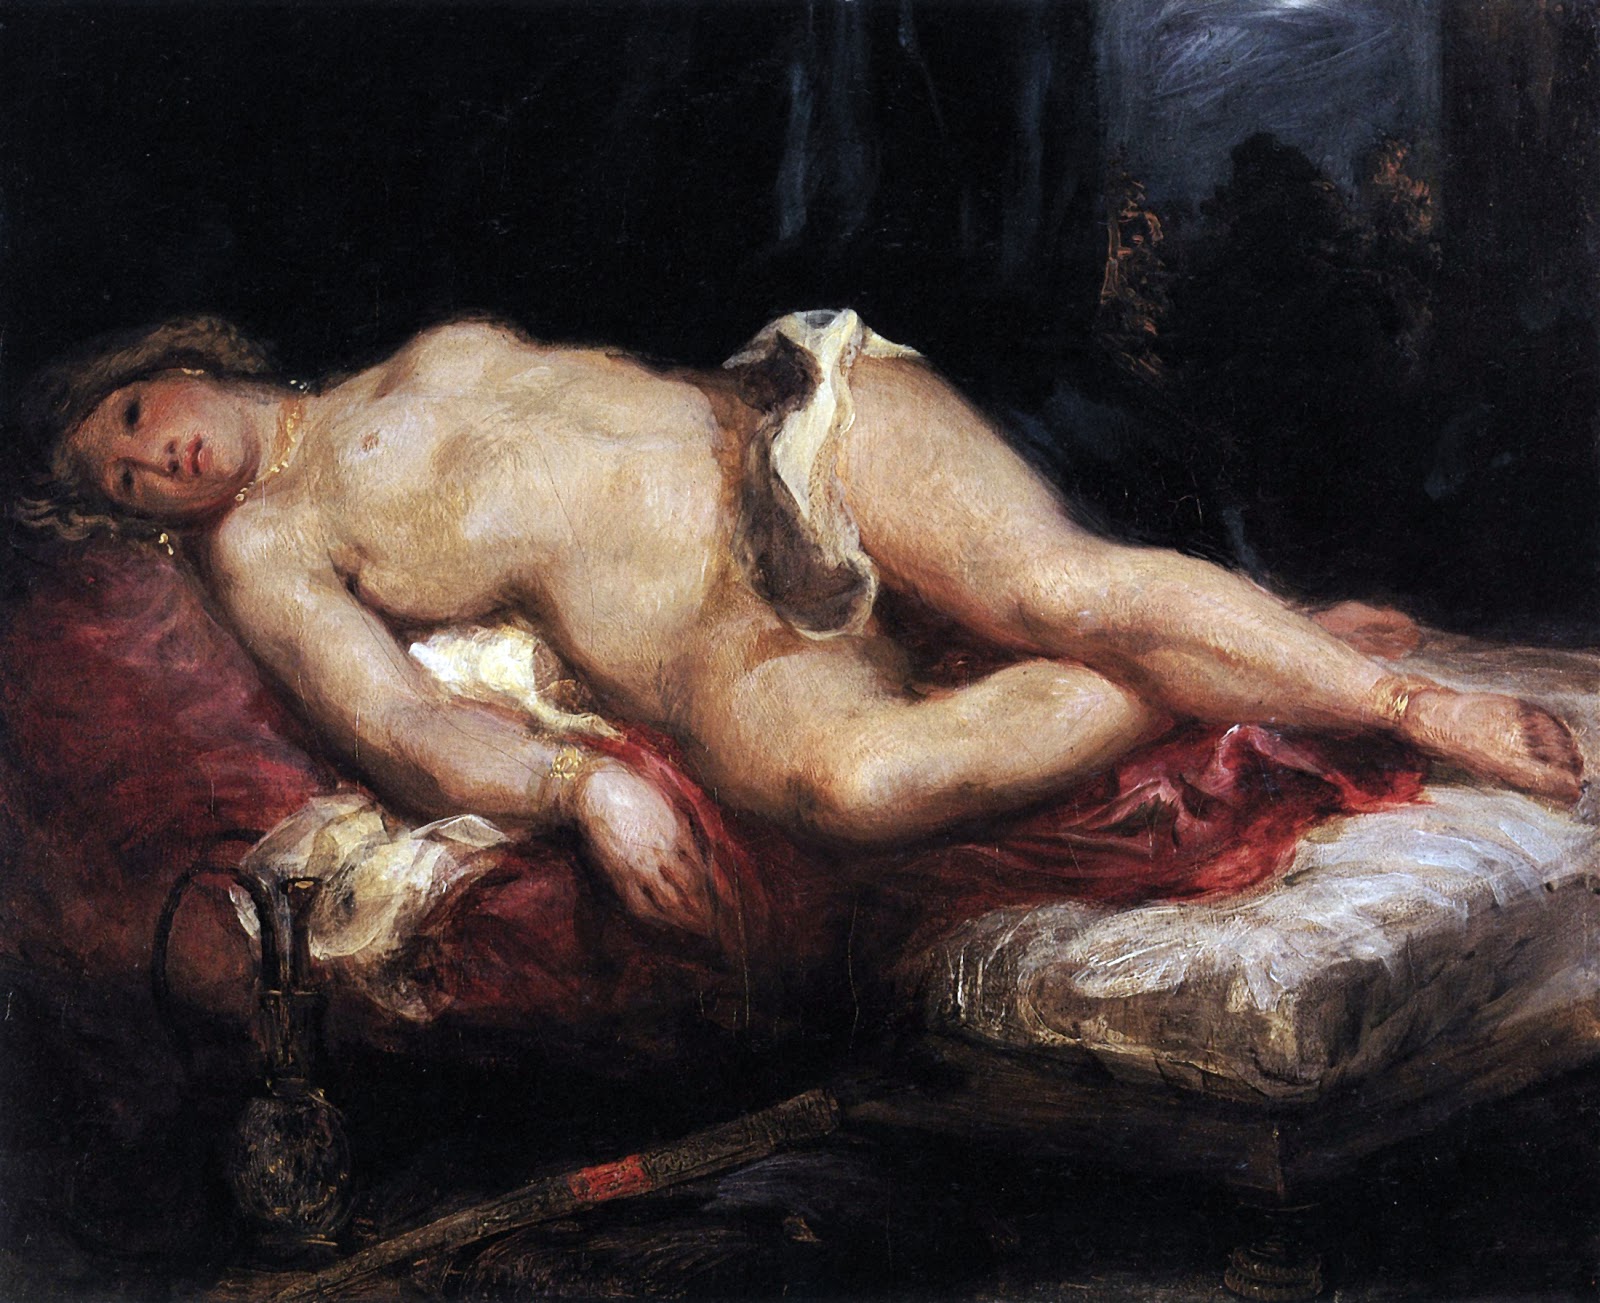 Eugene+Delacroix-1798-1863 (178).jpg